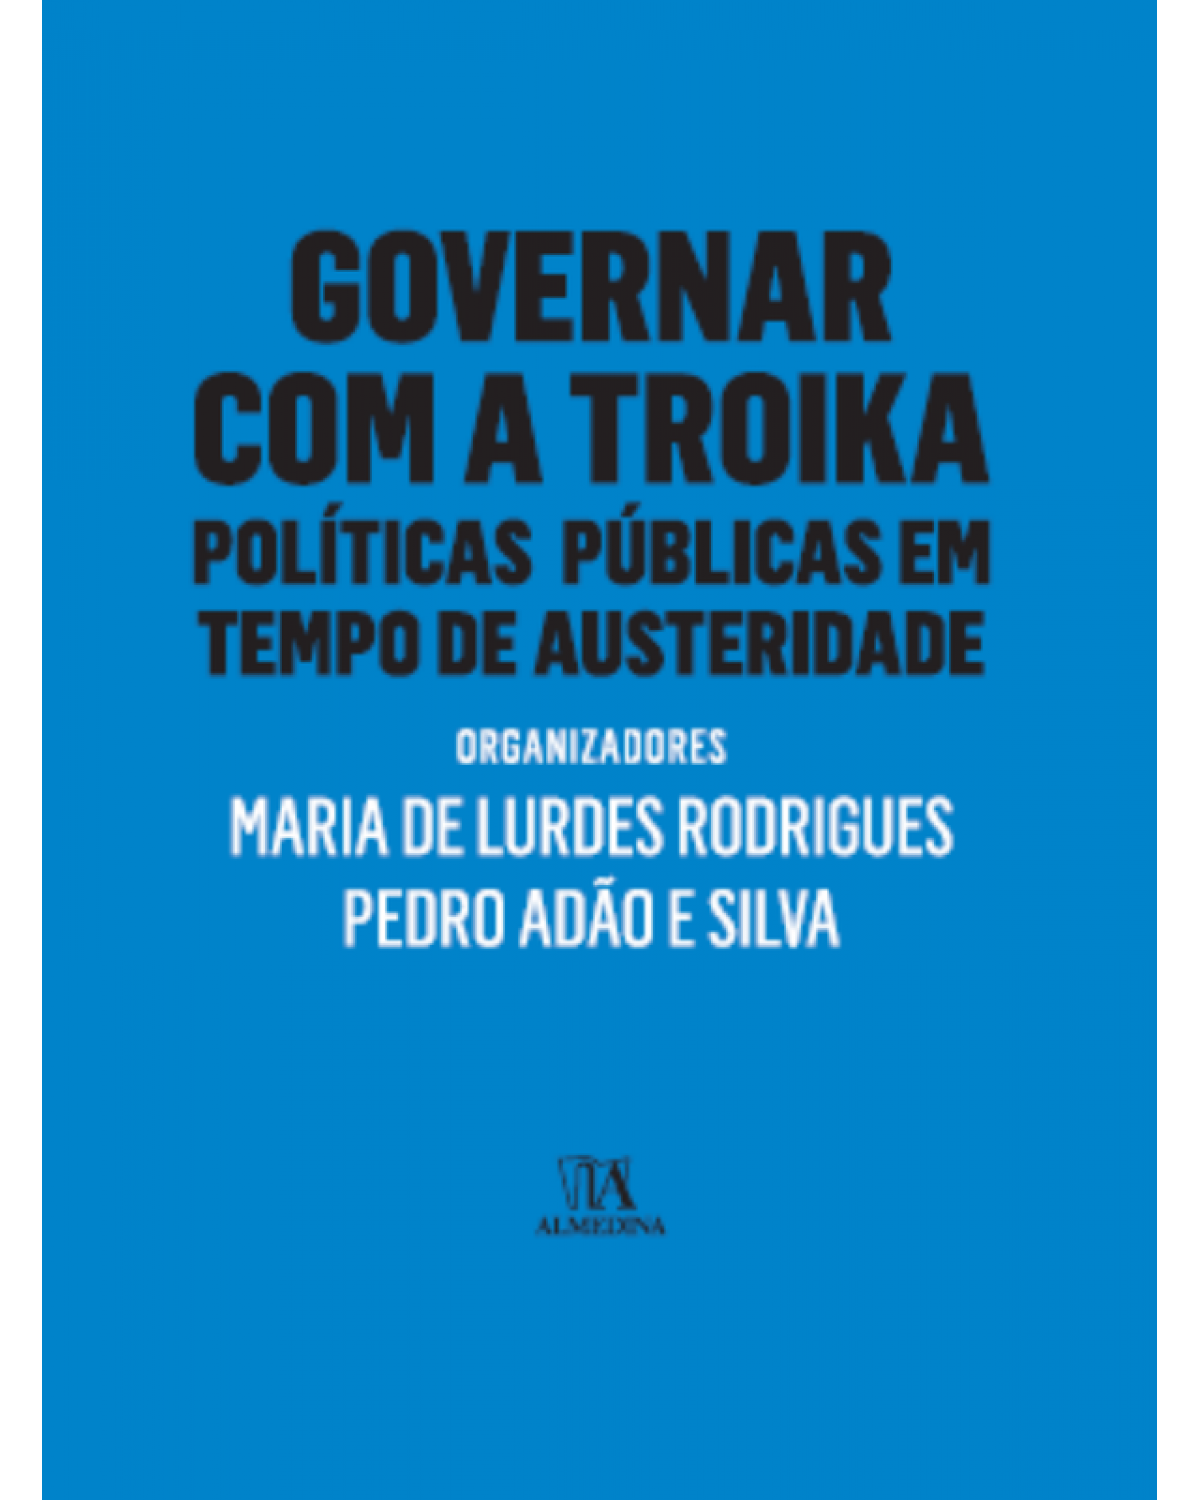 Governar com a troika - 1ª Edição | 2015